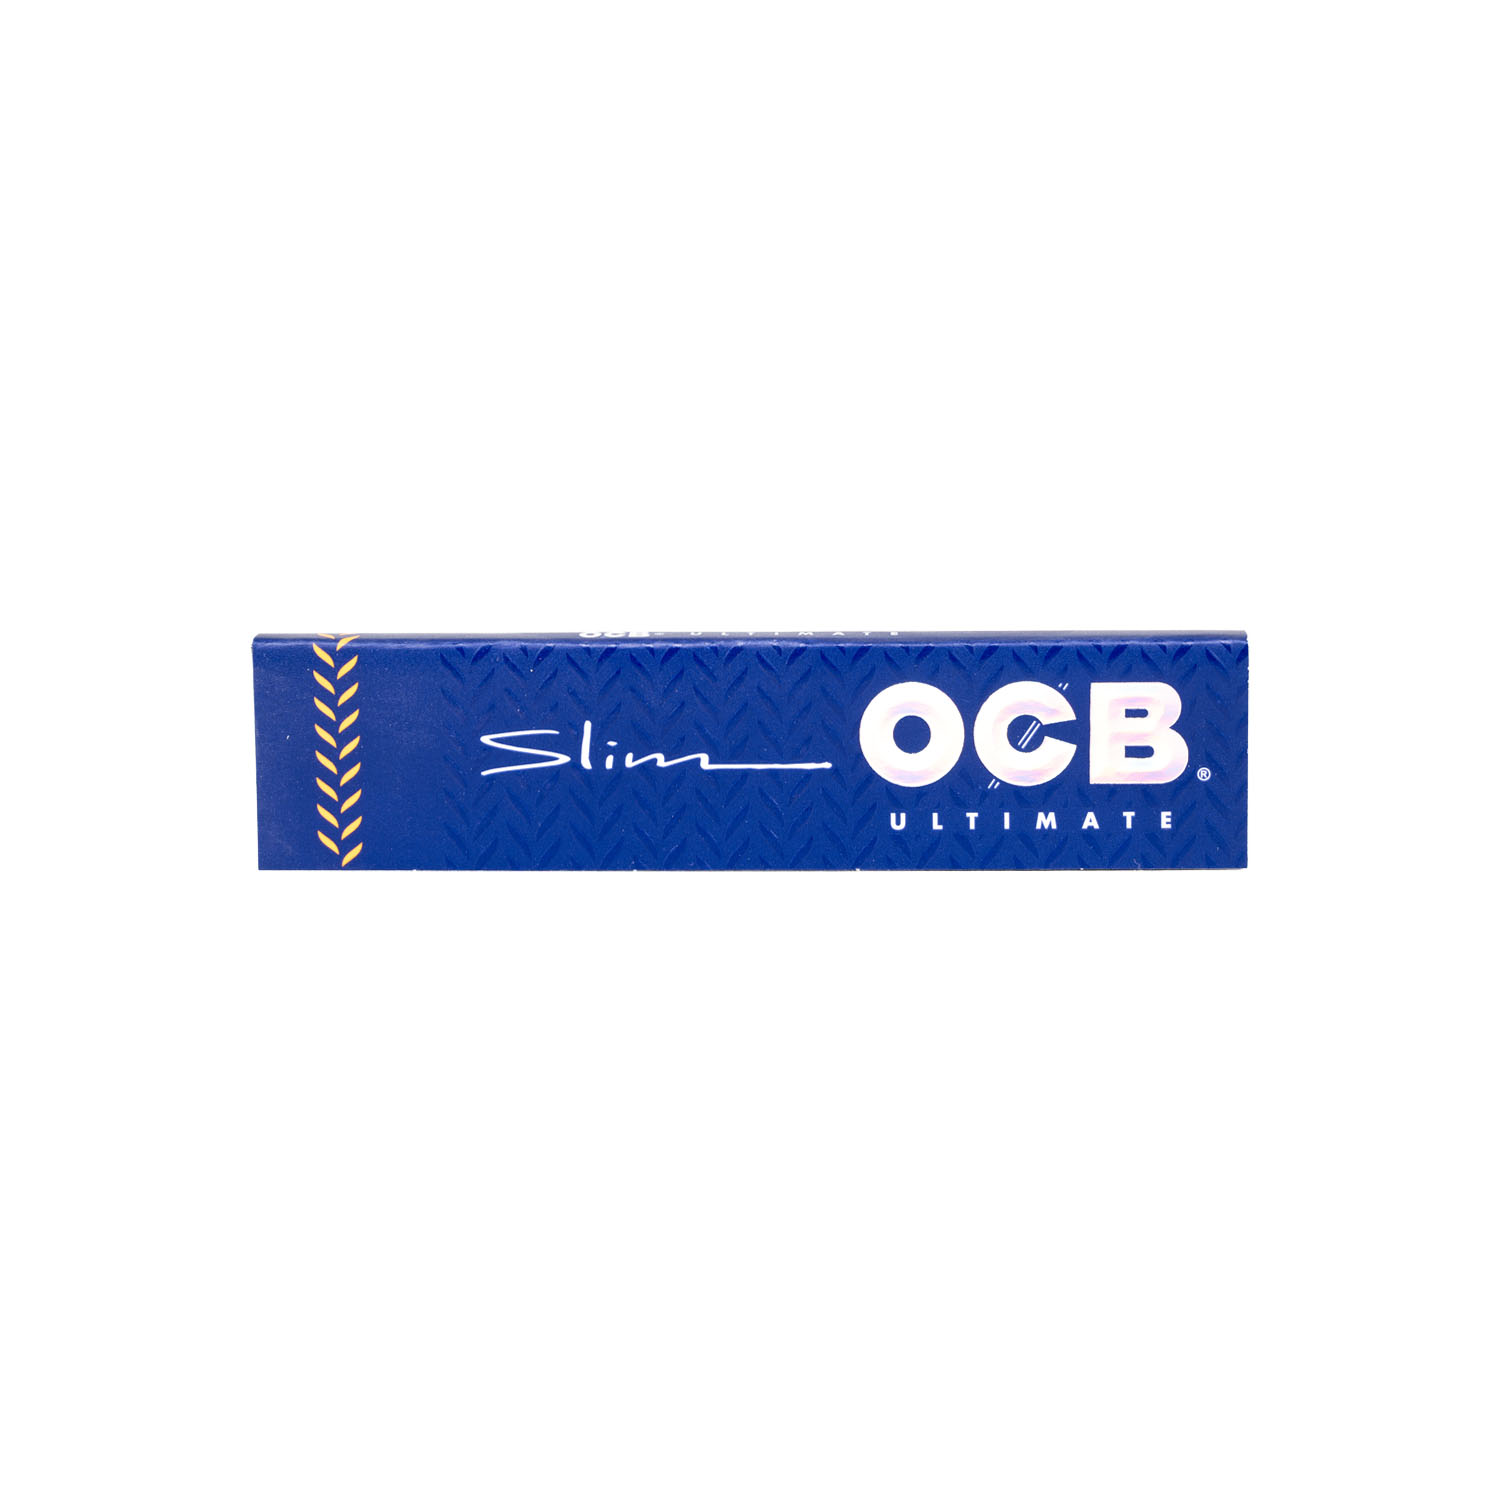 Feuilles Slim “OCB” Ultimate